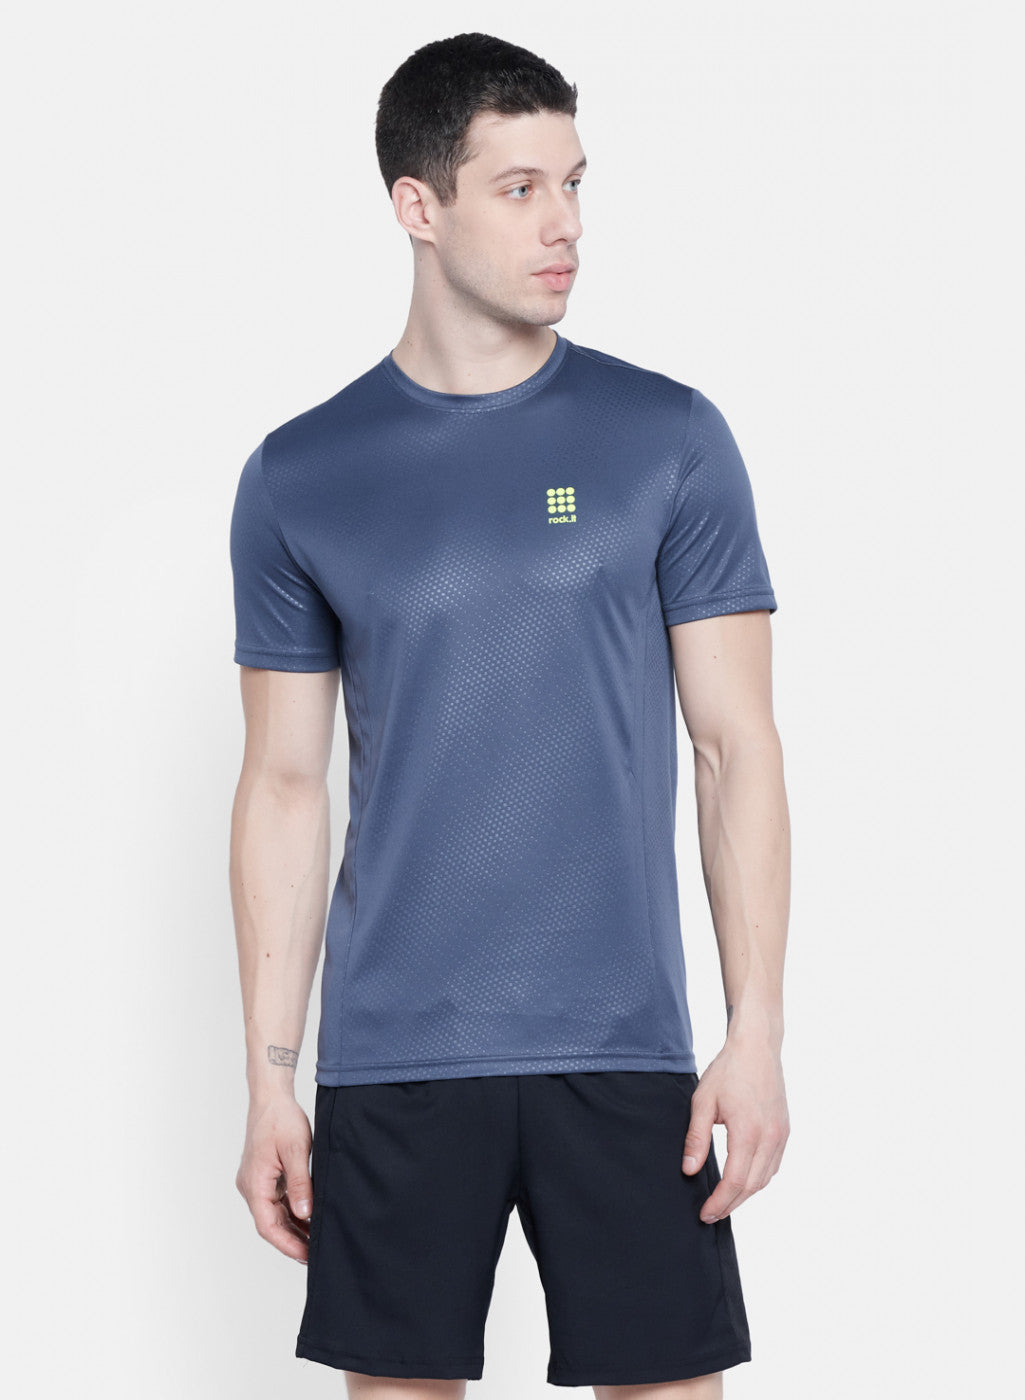 Mens Grey Self Design T-Shirt